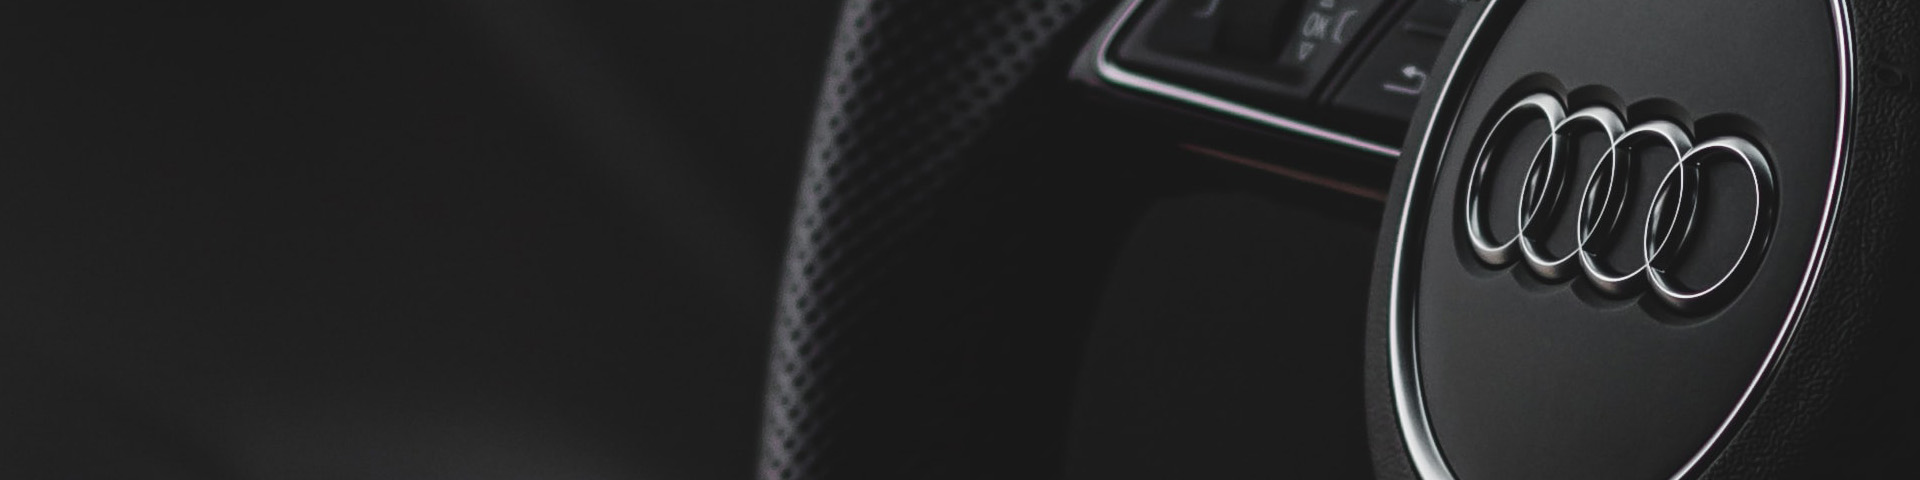 Audi A5 Backdrop